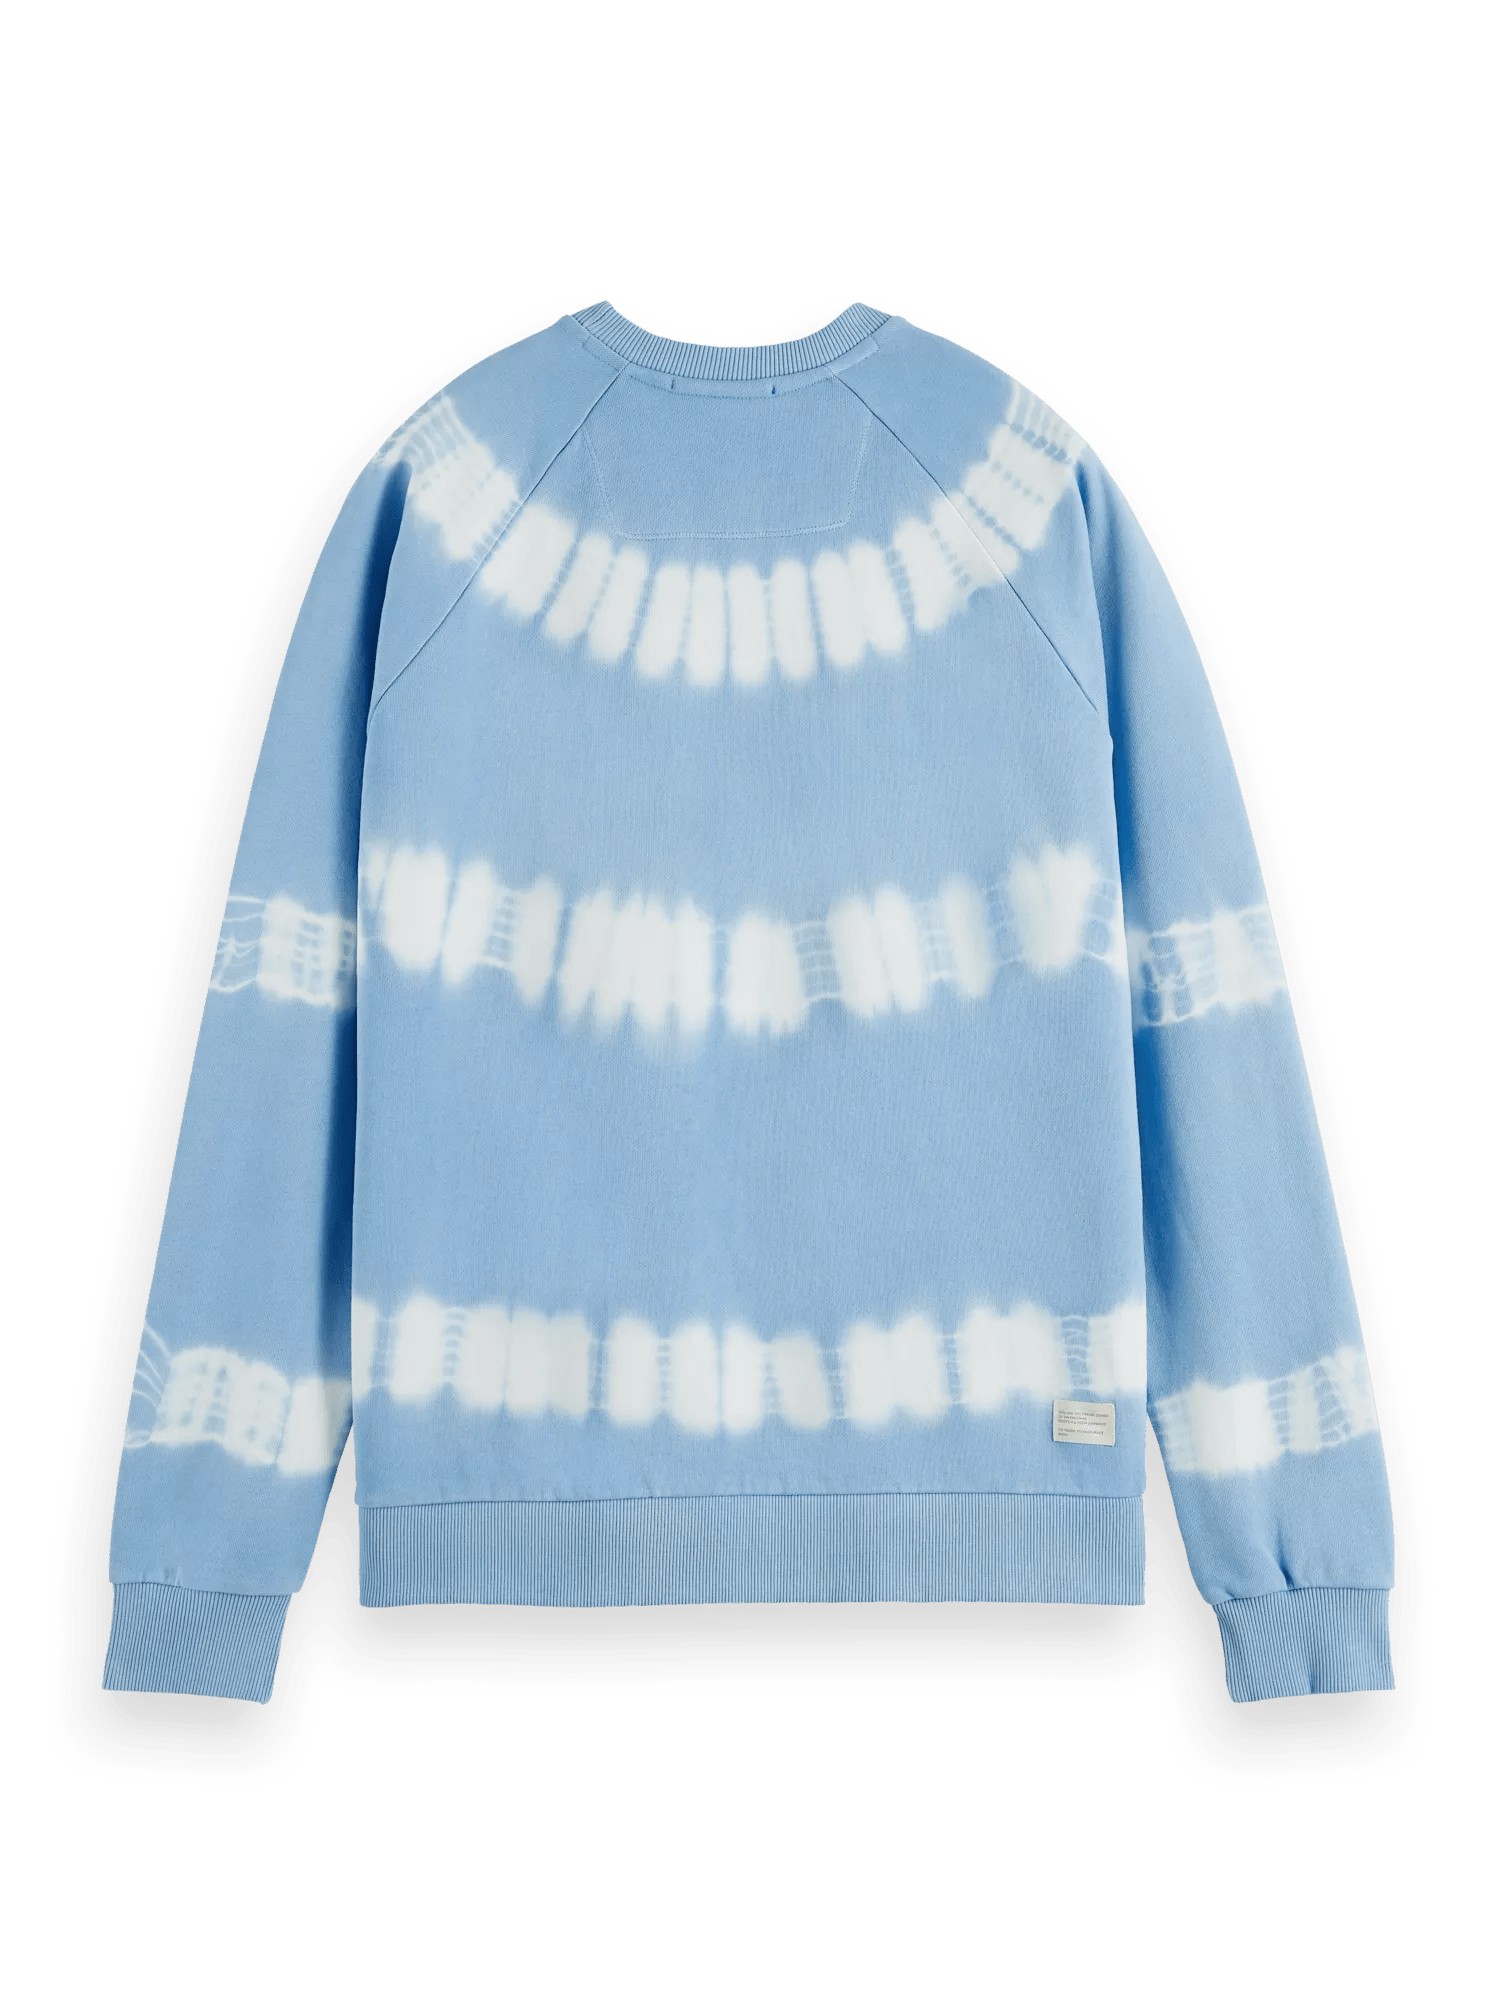 Scotch & Soda Tie-dye artwork relaxed-fit sweatshirt BCK